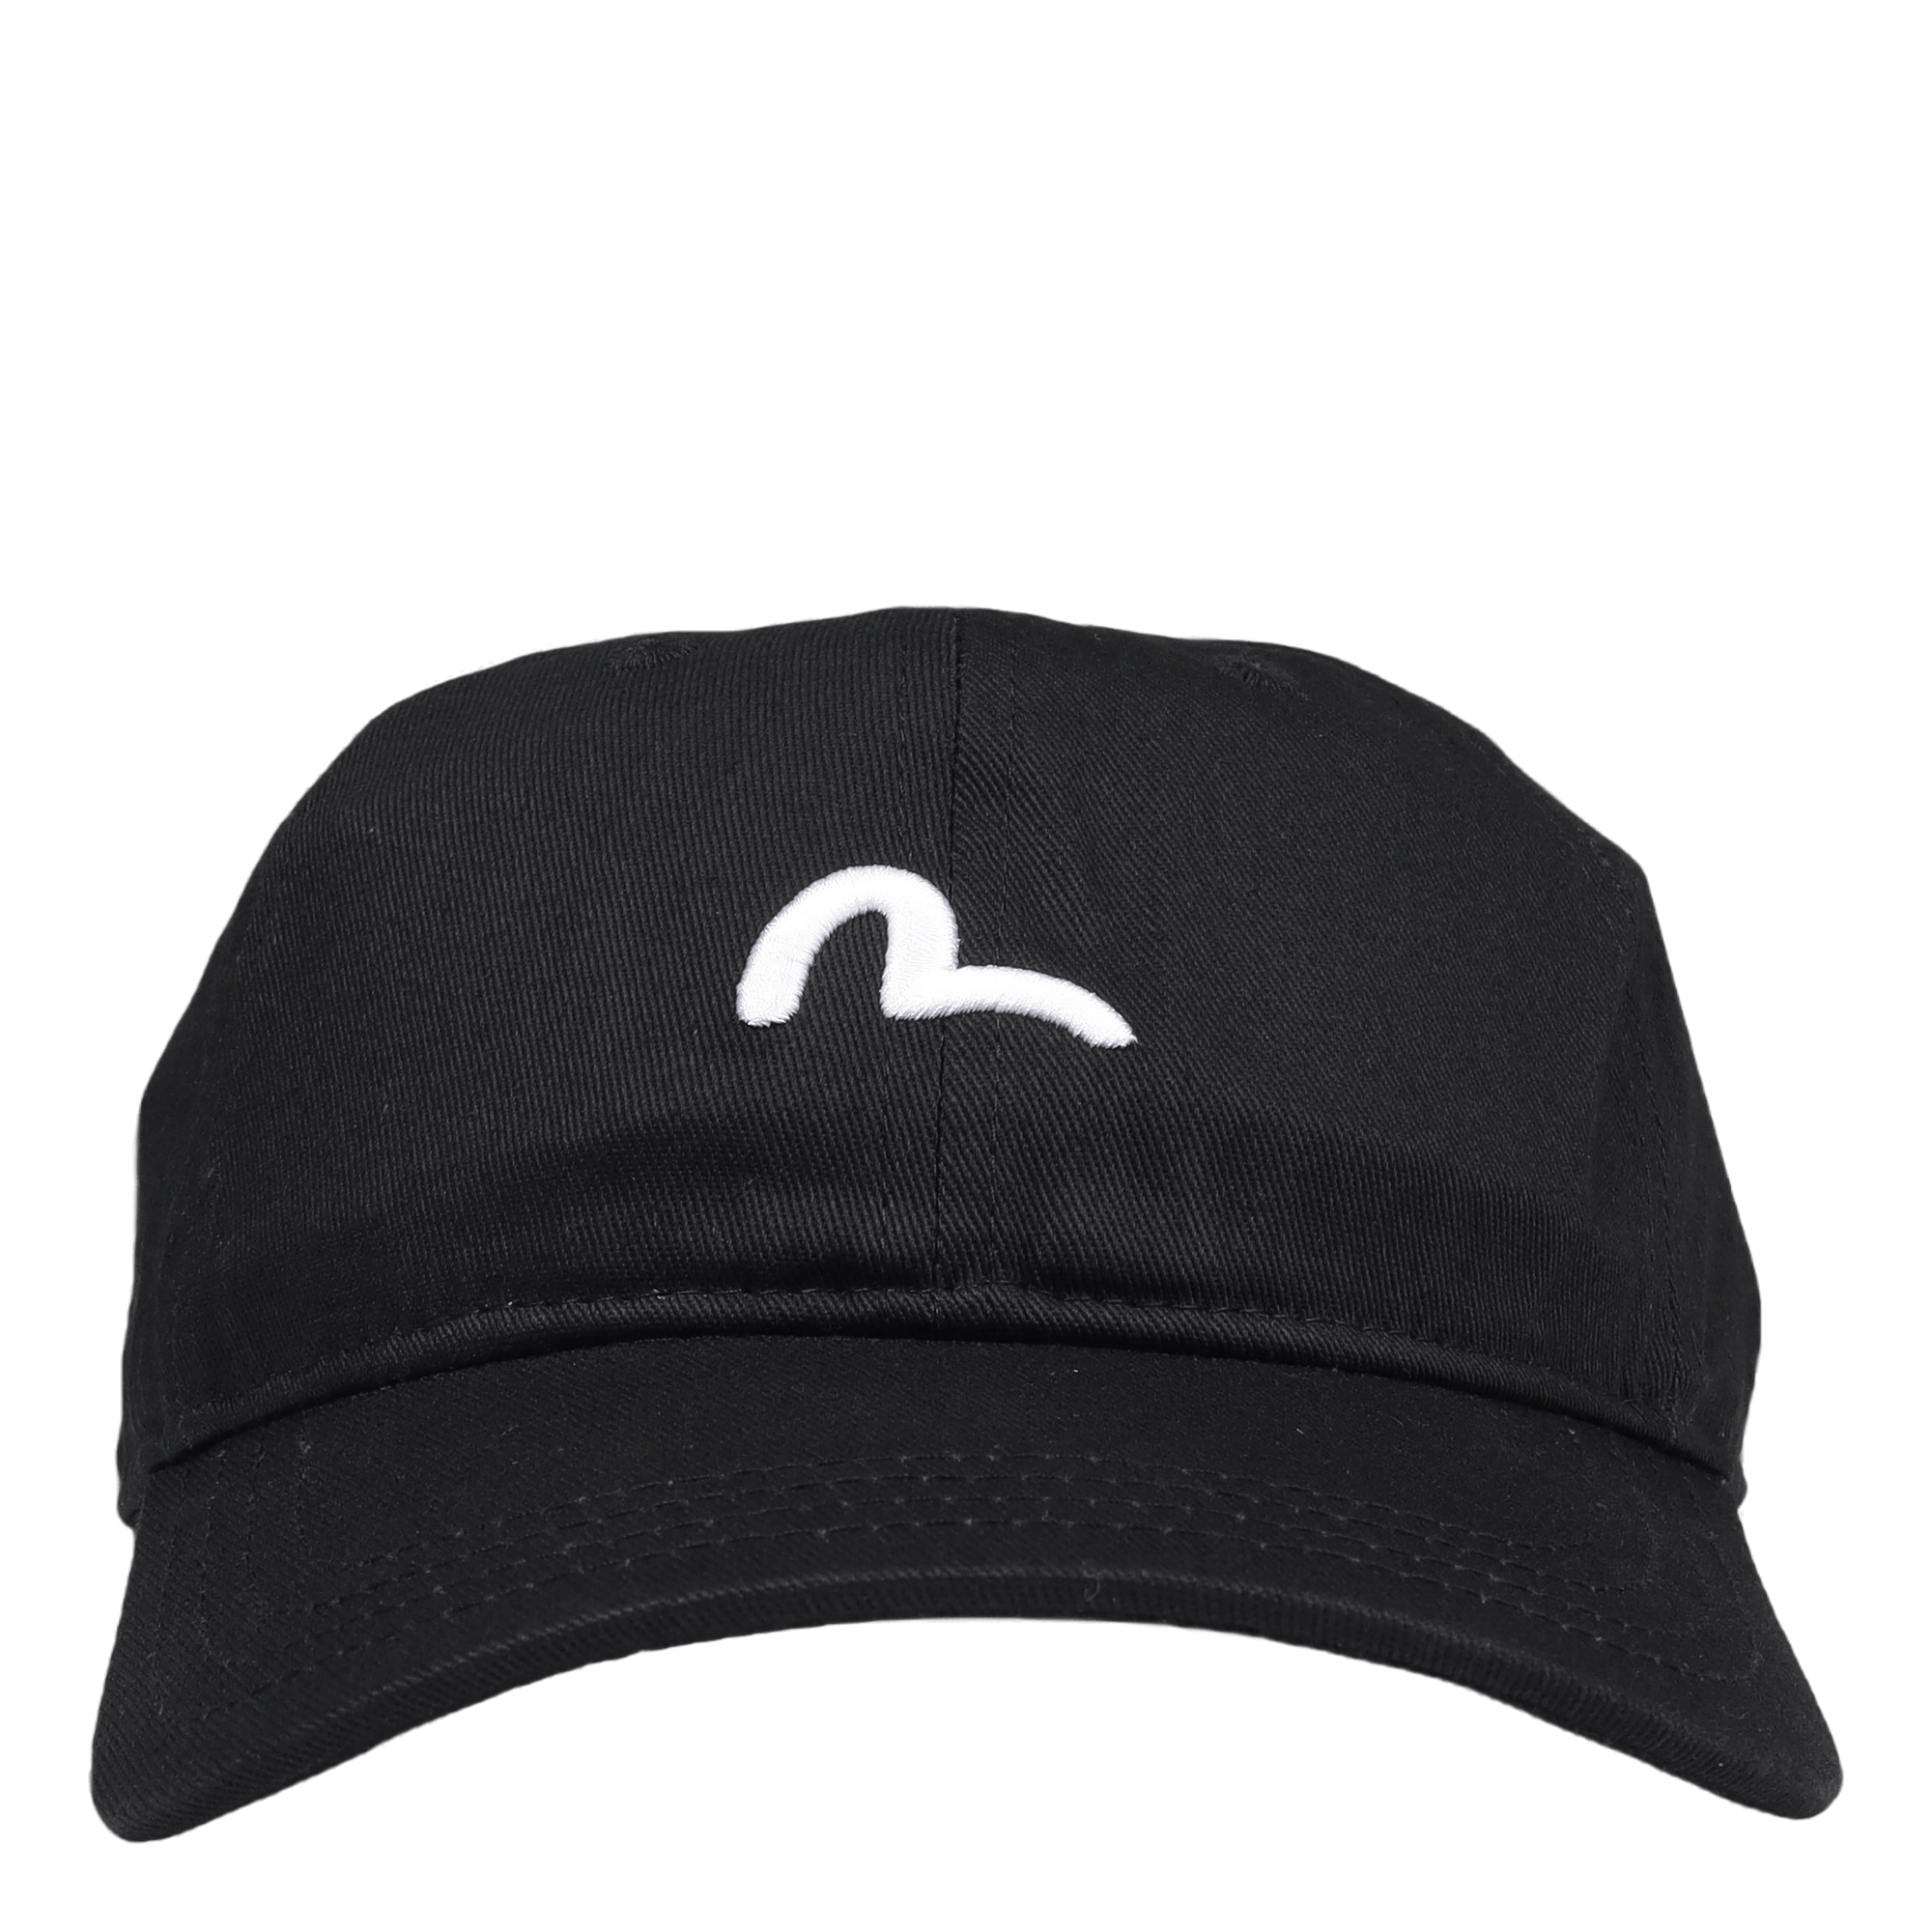 Hat Black